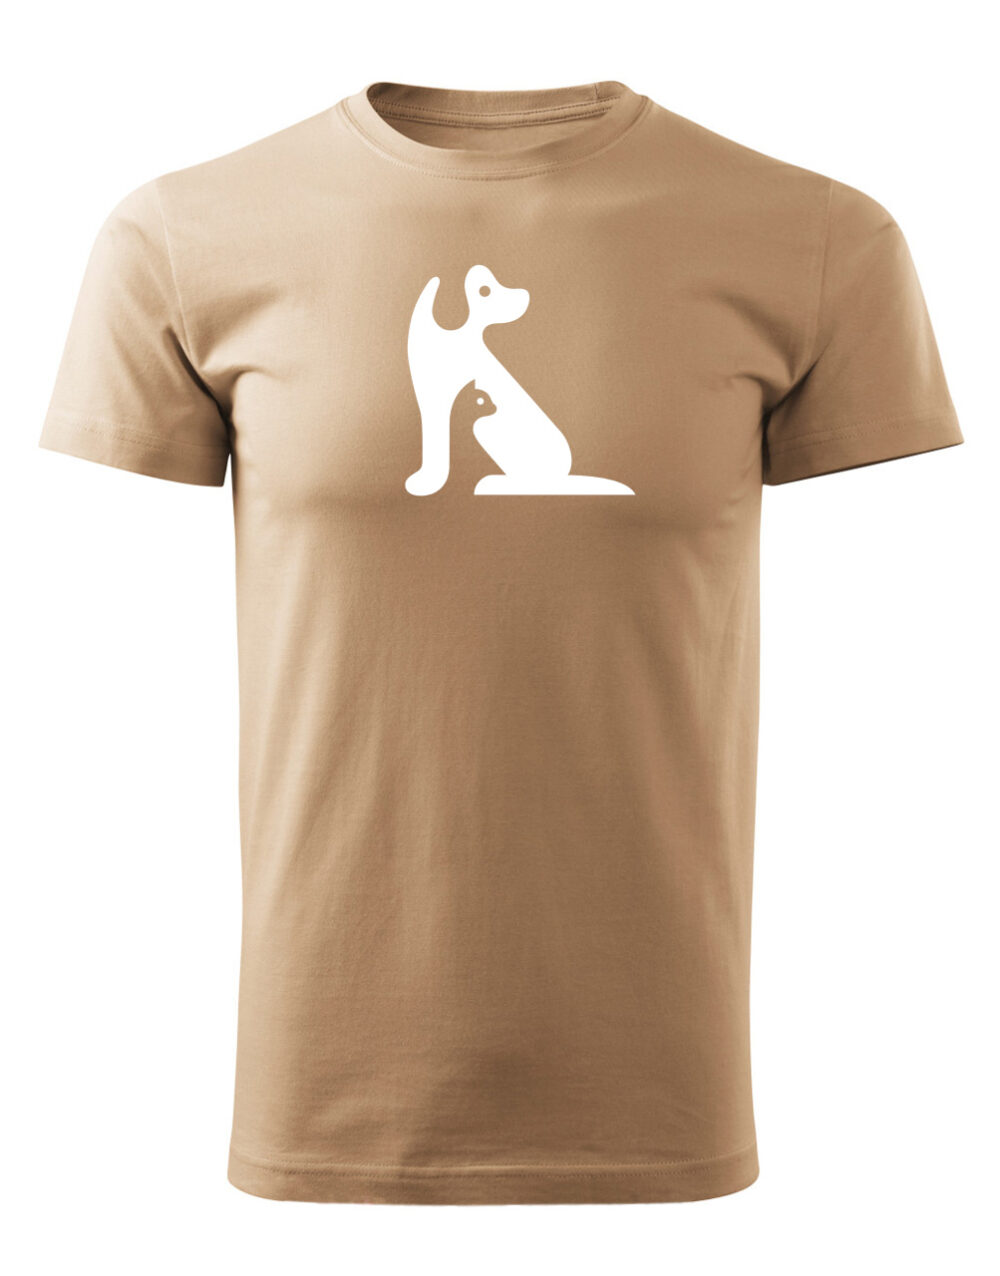 Pánské tričko s potiskem Kočka a pes písková